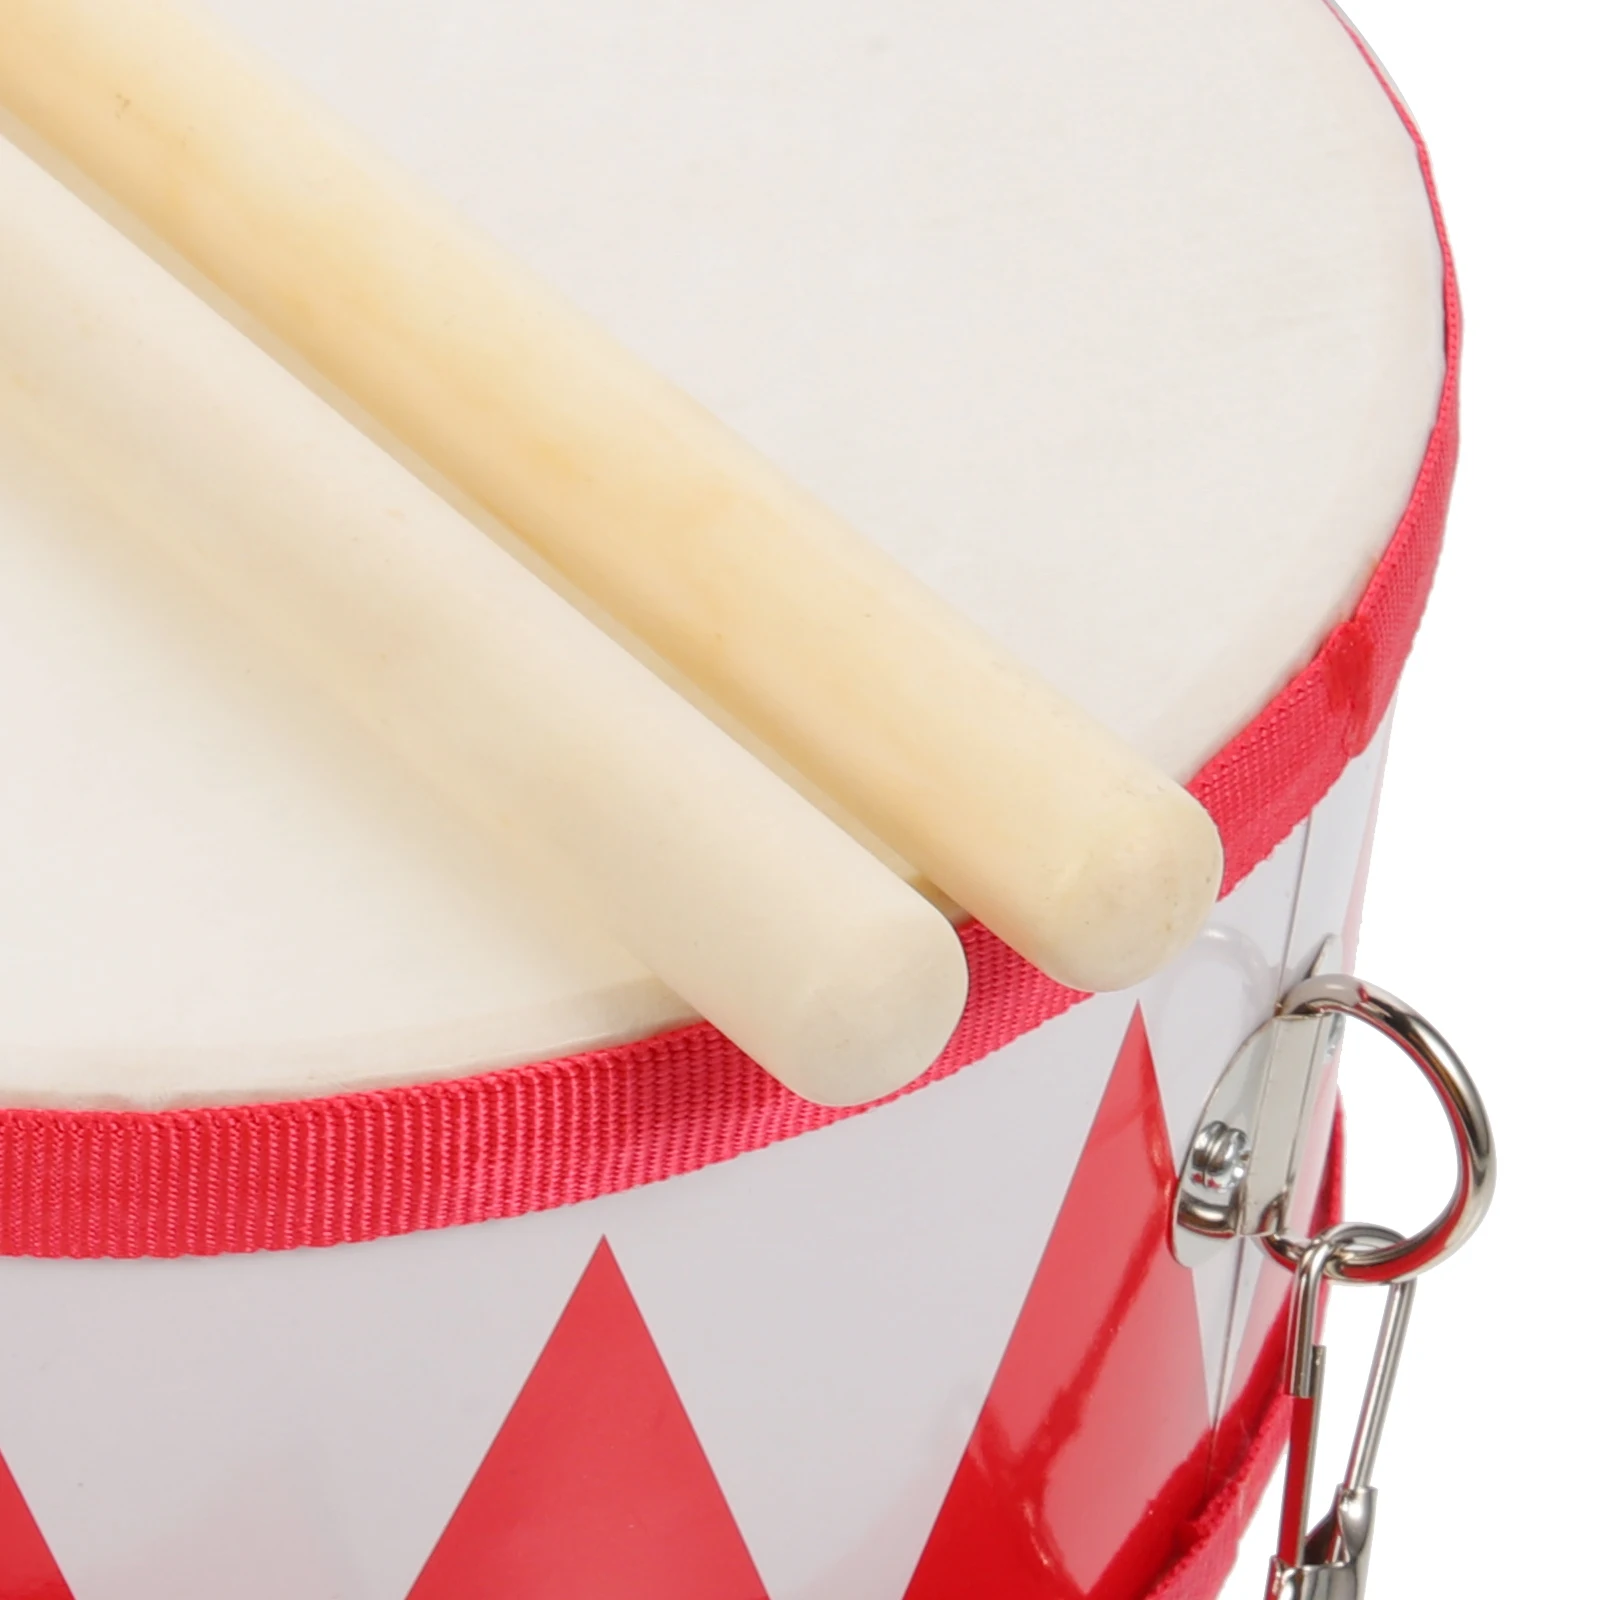 1 Satz Orff Percussion Instrument zweiseitige Snare Drum tragbare Anfänger Snare Drum mit Drumsticks Strap Kinderspiel zeug Geschenke